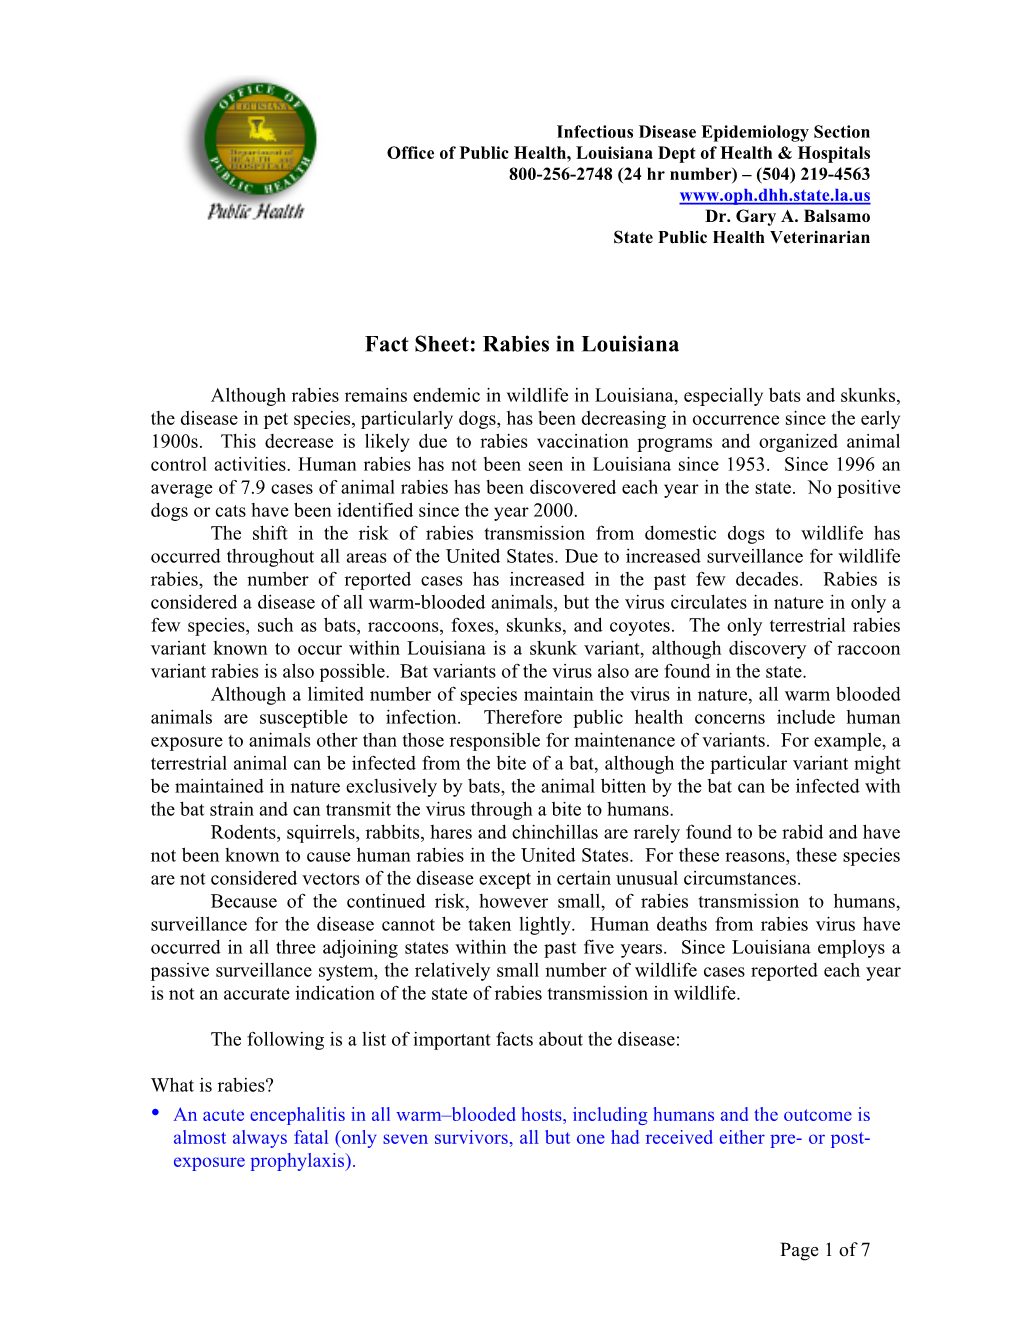 Fact Sheet: Rabies in Louisiana